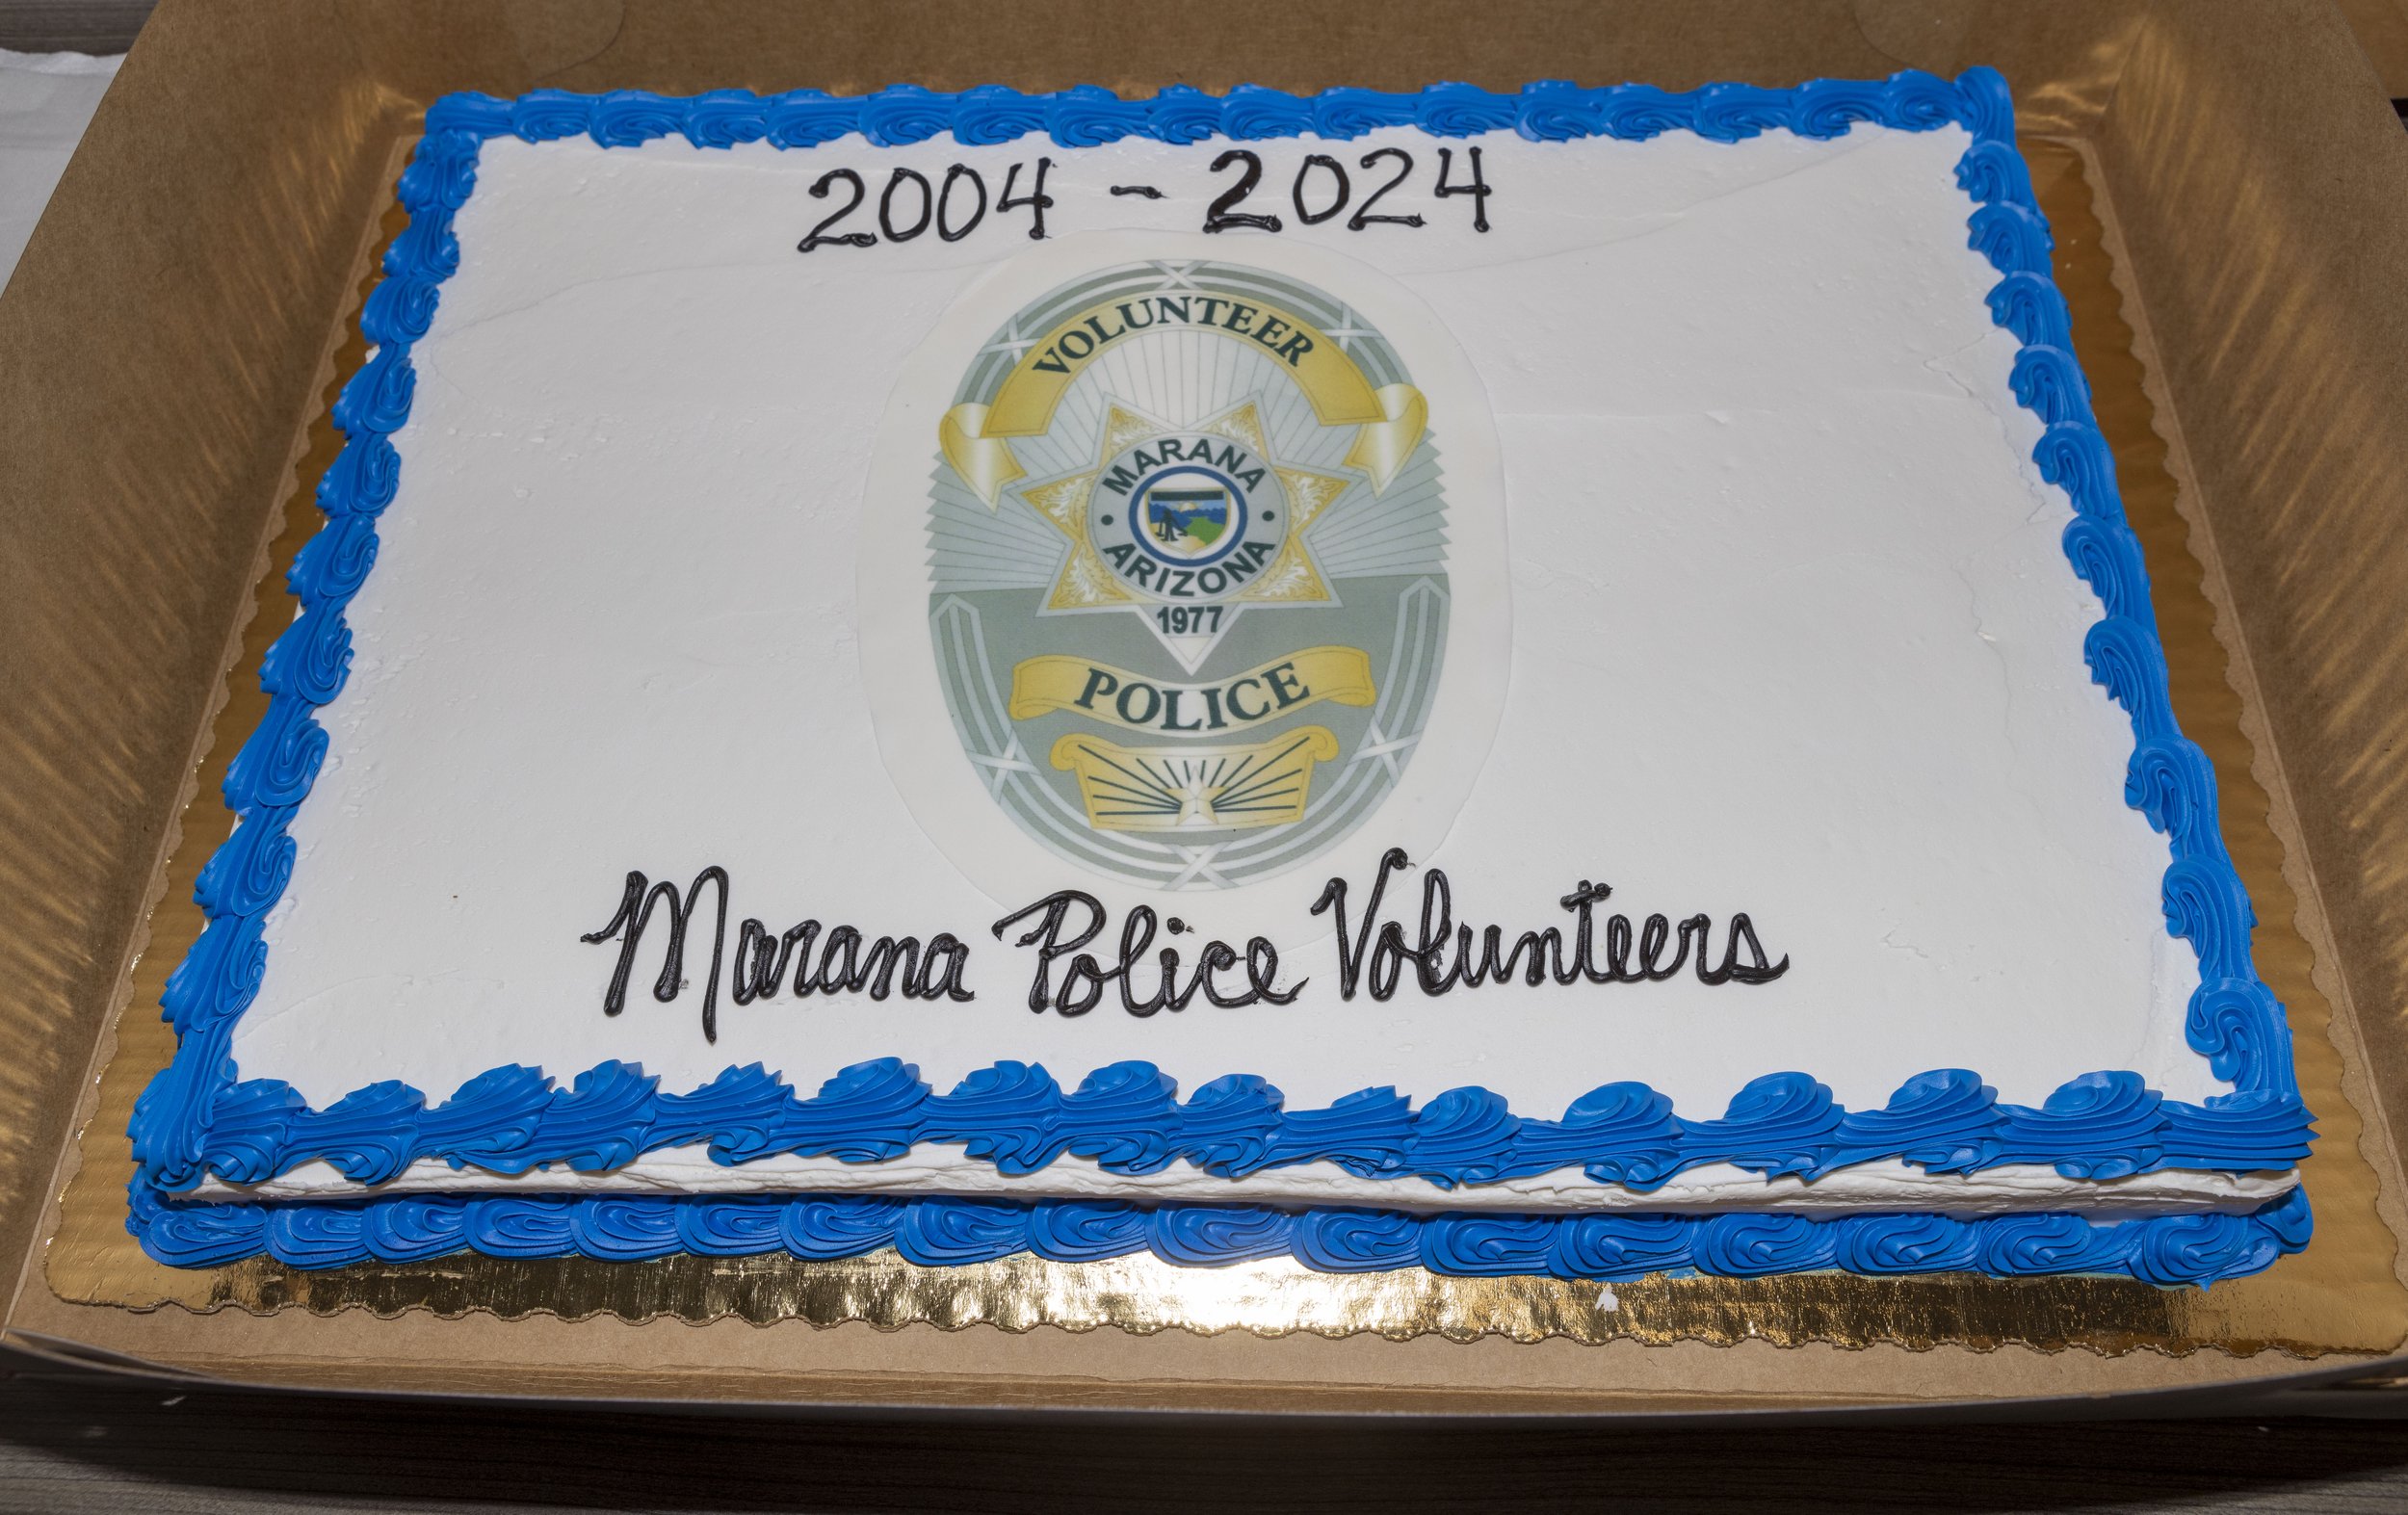 20th anniversary of Marana Police Volunteer Program